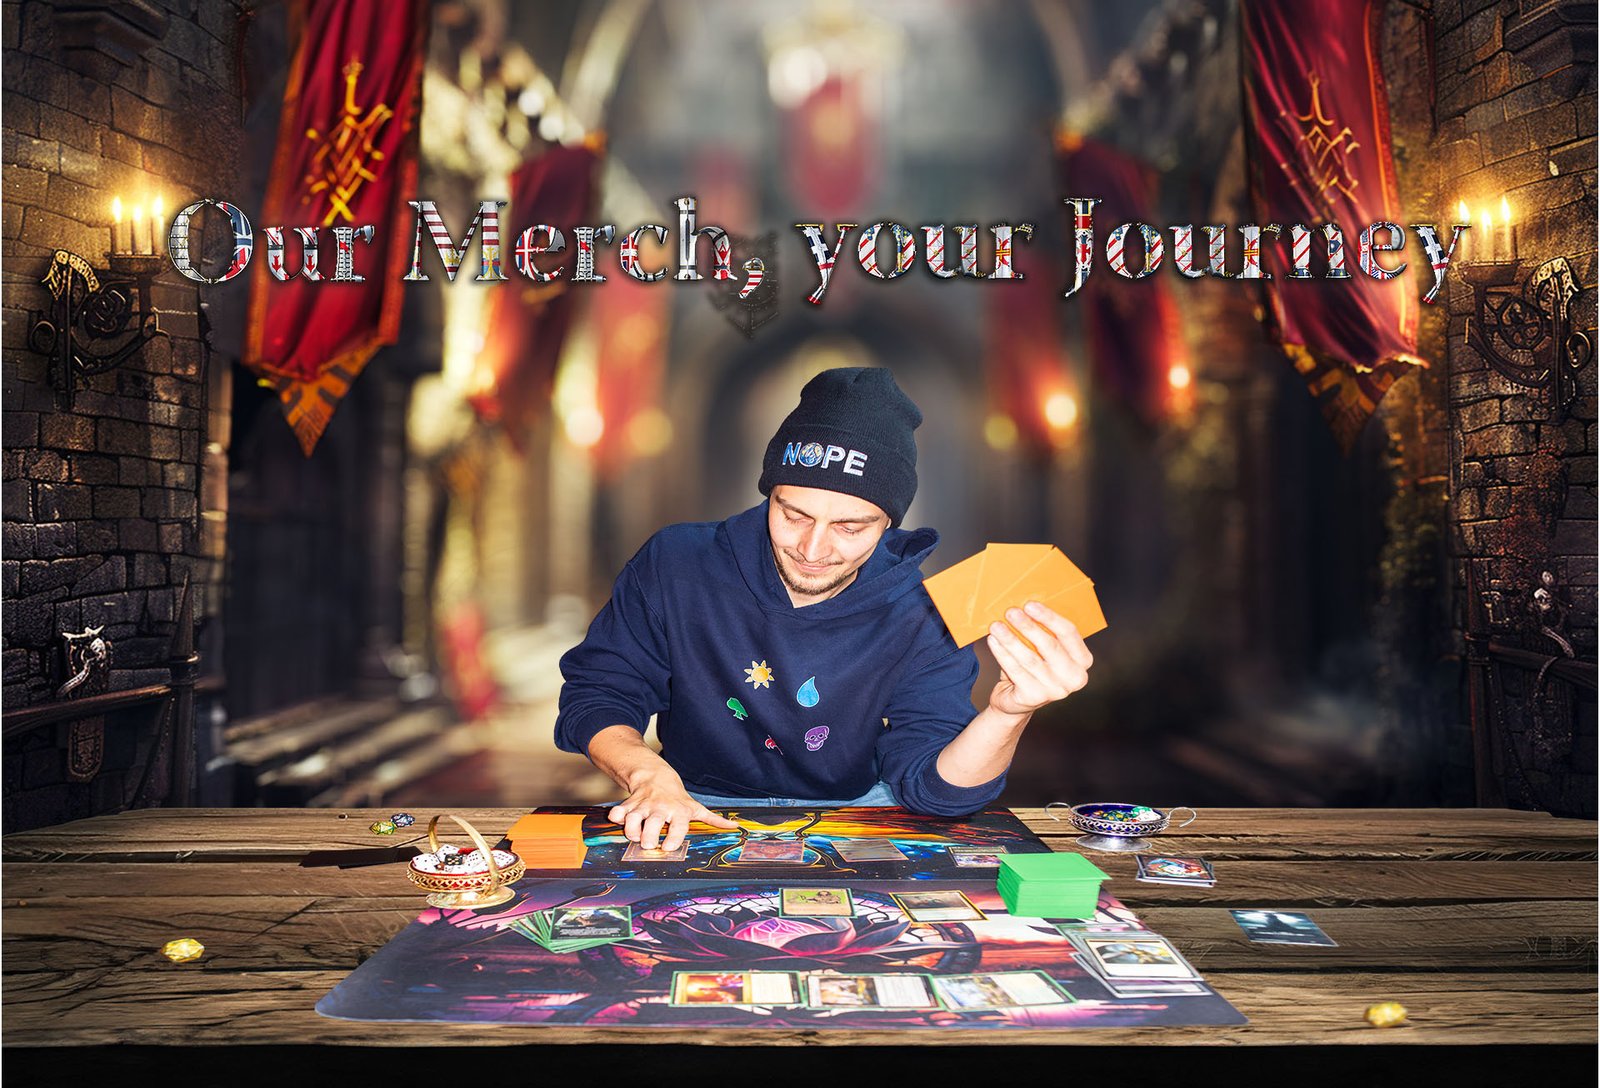 Branding-Foto einer Spielefirma, ein Mann sitzt an einem Tisch und hält Karten, im Hintergrund der Text 'Our Merch, your Journey' in einer mittelalterlich anmutenden Halle.